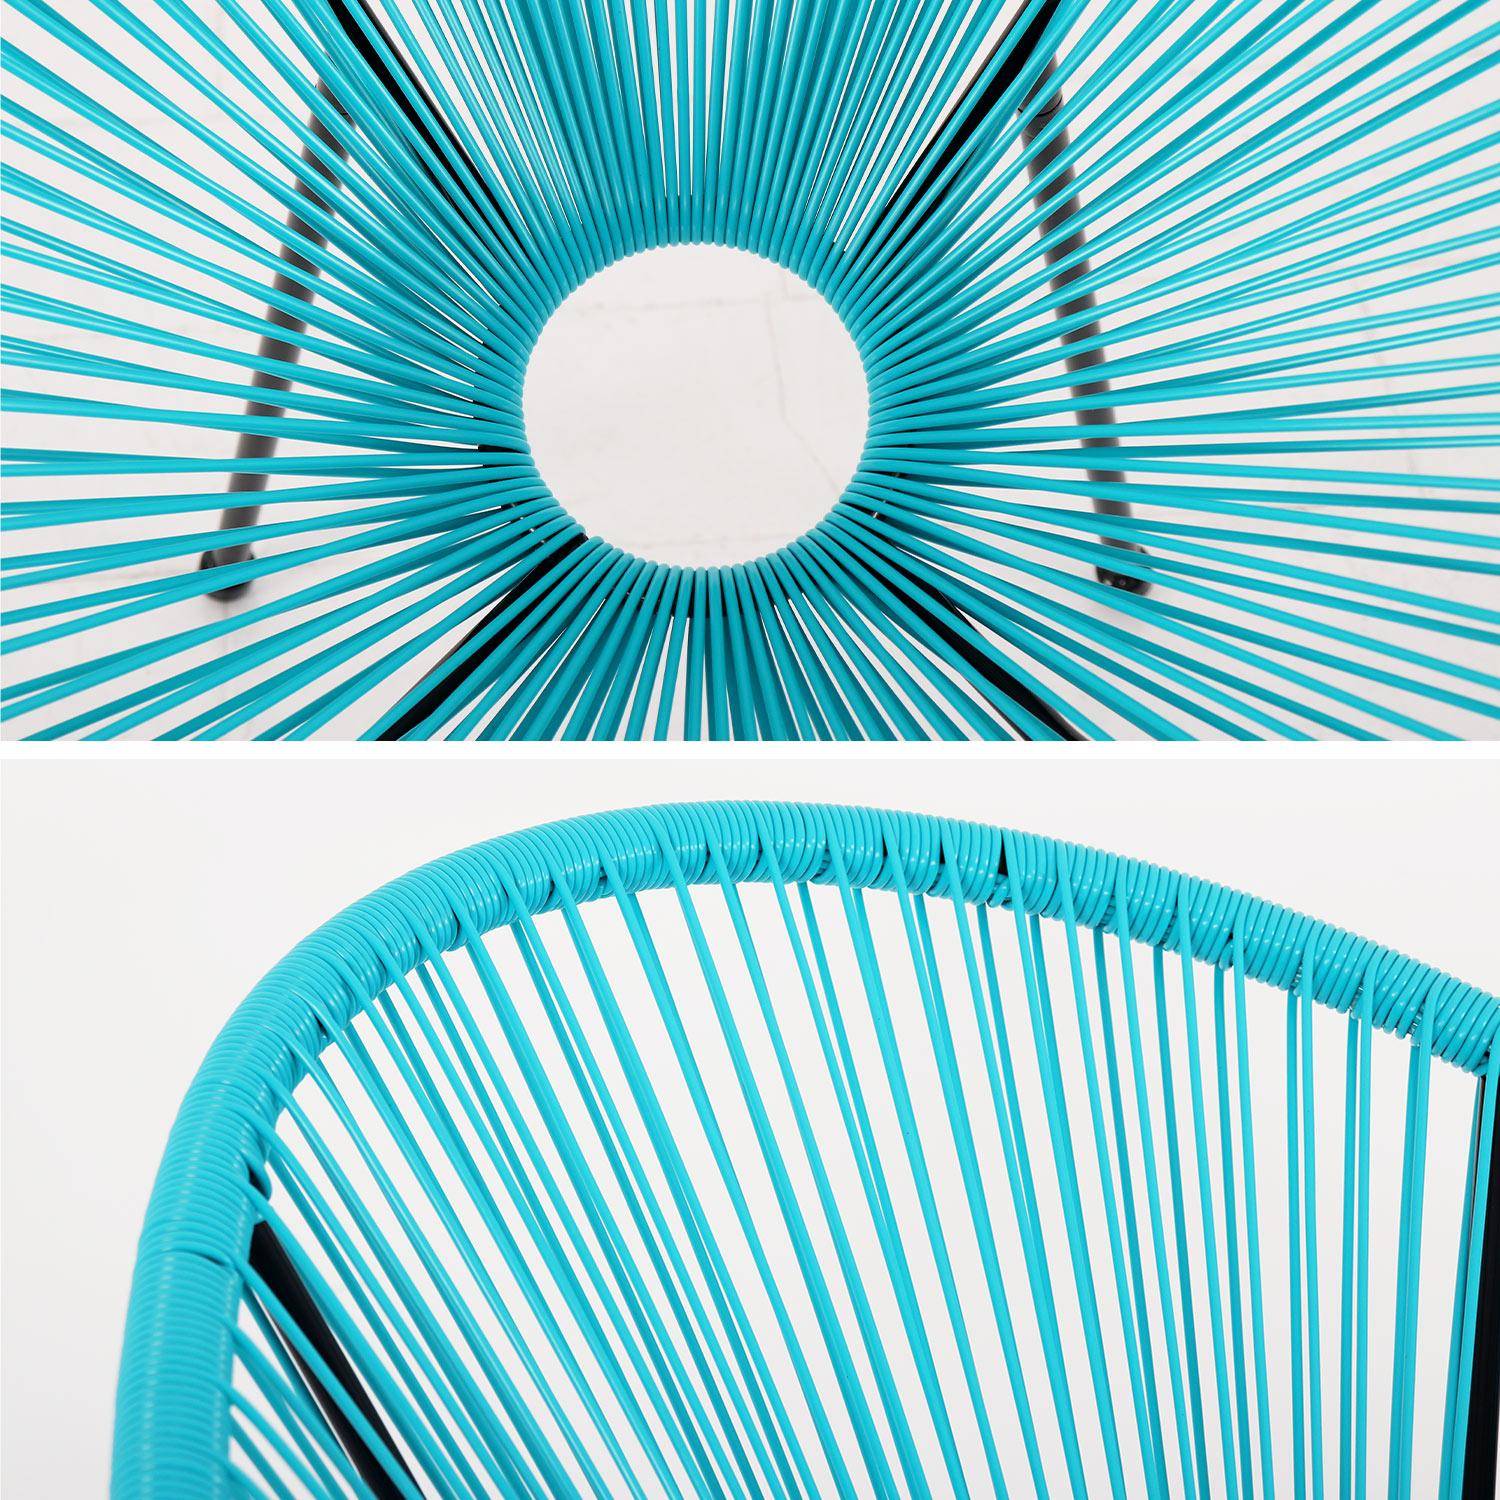 Fauteuil ACAPULCO forme d'oeuf -Turquoise - Fauteuil 4 pieds design rétro, cordage plastique, intérieur / extérieur Photo4